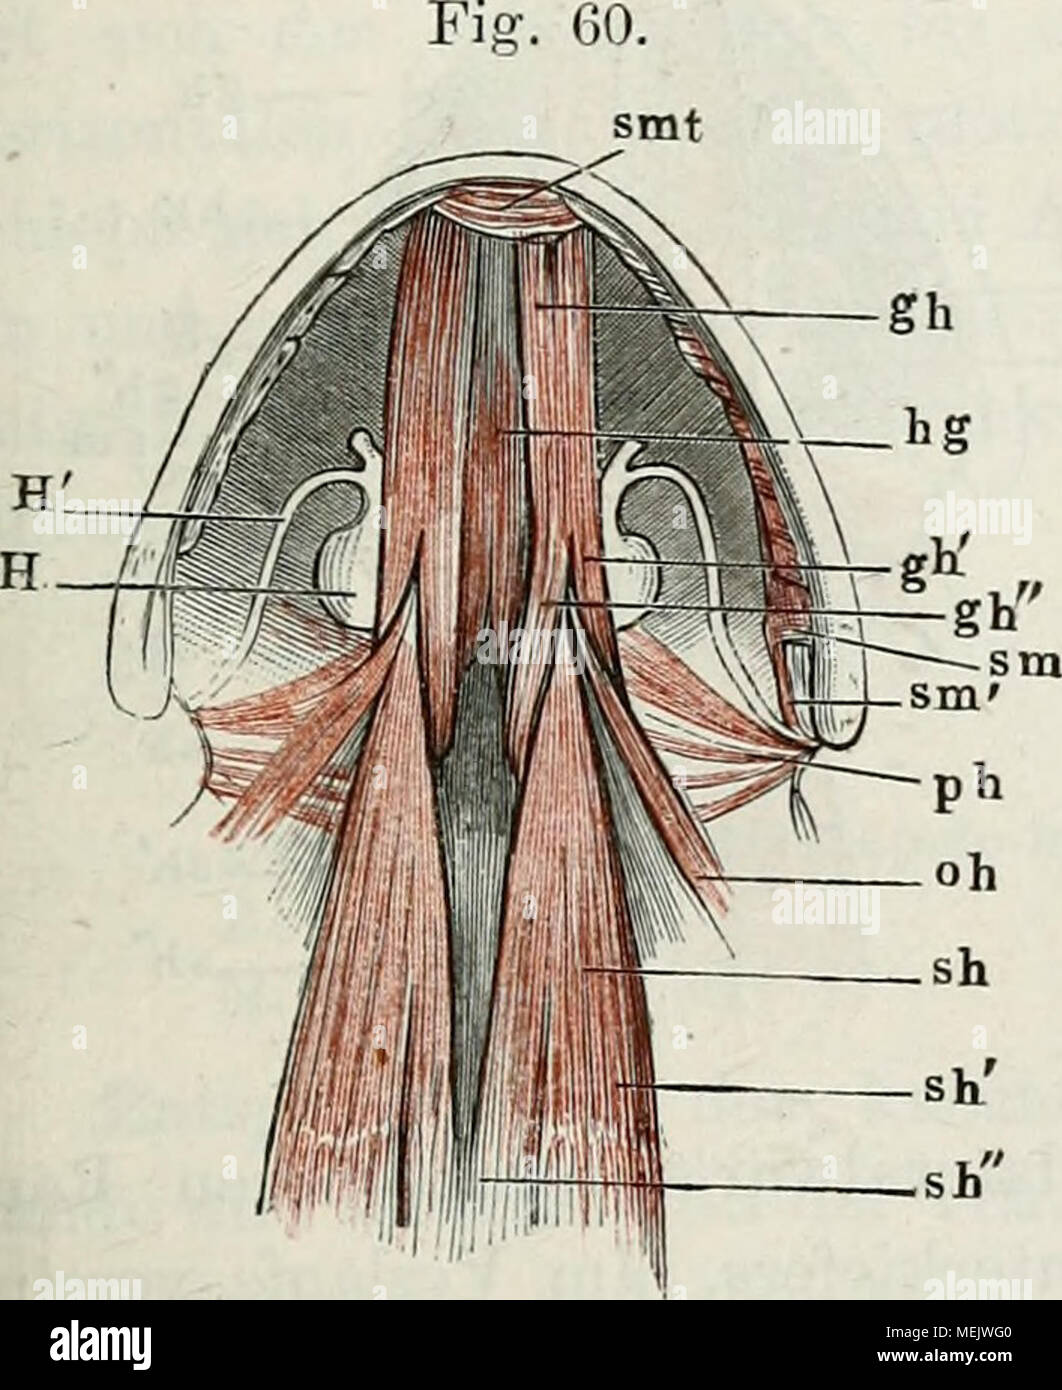 . Die Anatomie des Frosches: ein Handbuch,. Muskeln des Zungenbeins und der Zunge von Rana esculenta, von unten. Der m. submaxillaris ist in der NÃ¤er Thunfischwadenfänger Insertion abgesclinitten und entfernt. sm m. submaxillaris. sm' Ursprung der hinteren Teil dessel- ben vom Zungenbeinhorn. smt-m. suhmentalis. g7t m. geniohyoideus. g h "laterale Teil desselben. g h "mediale Teil desselben. ha m. hyoglossus.sh m. stemohyoideus. s h' lateraler Ursprung desselben (m. rectus Trizeps).sh' medialer Ursprung desselben. 0 h m. omohj - oideus. / (H mm. petrohyoidei. //ZungenbeinkÃ¶rper. // - Vo Stockfoto